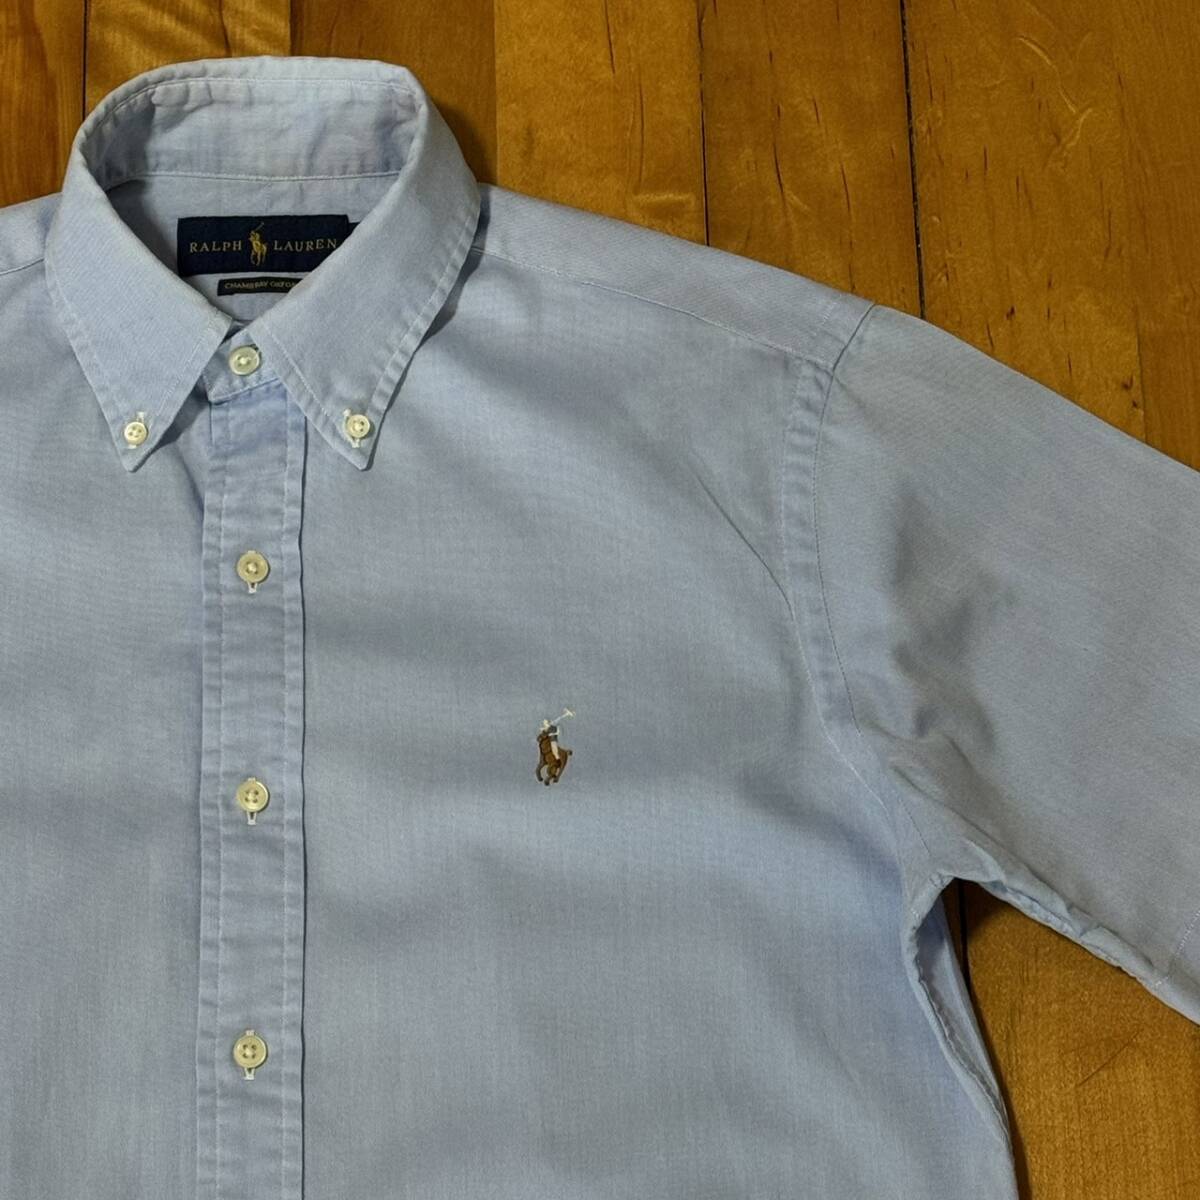  Ralph Lauren короткий рукав оскфорд рубашка синий S BD рубашка po колено вышивка 